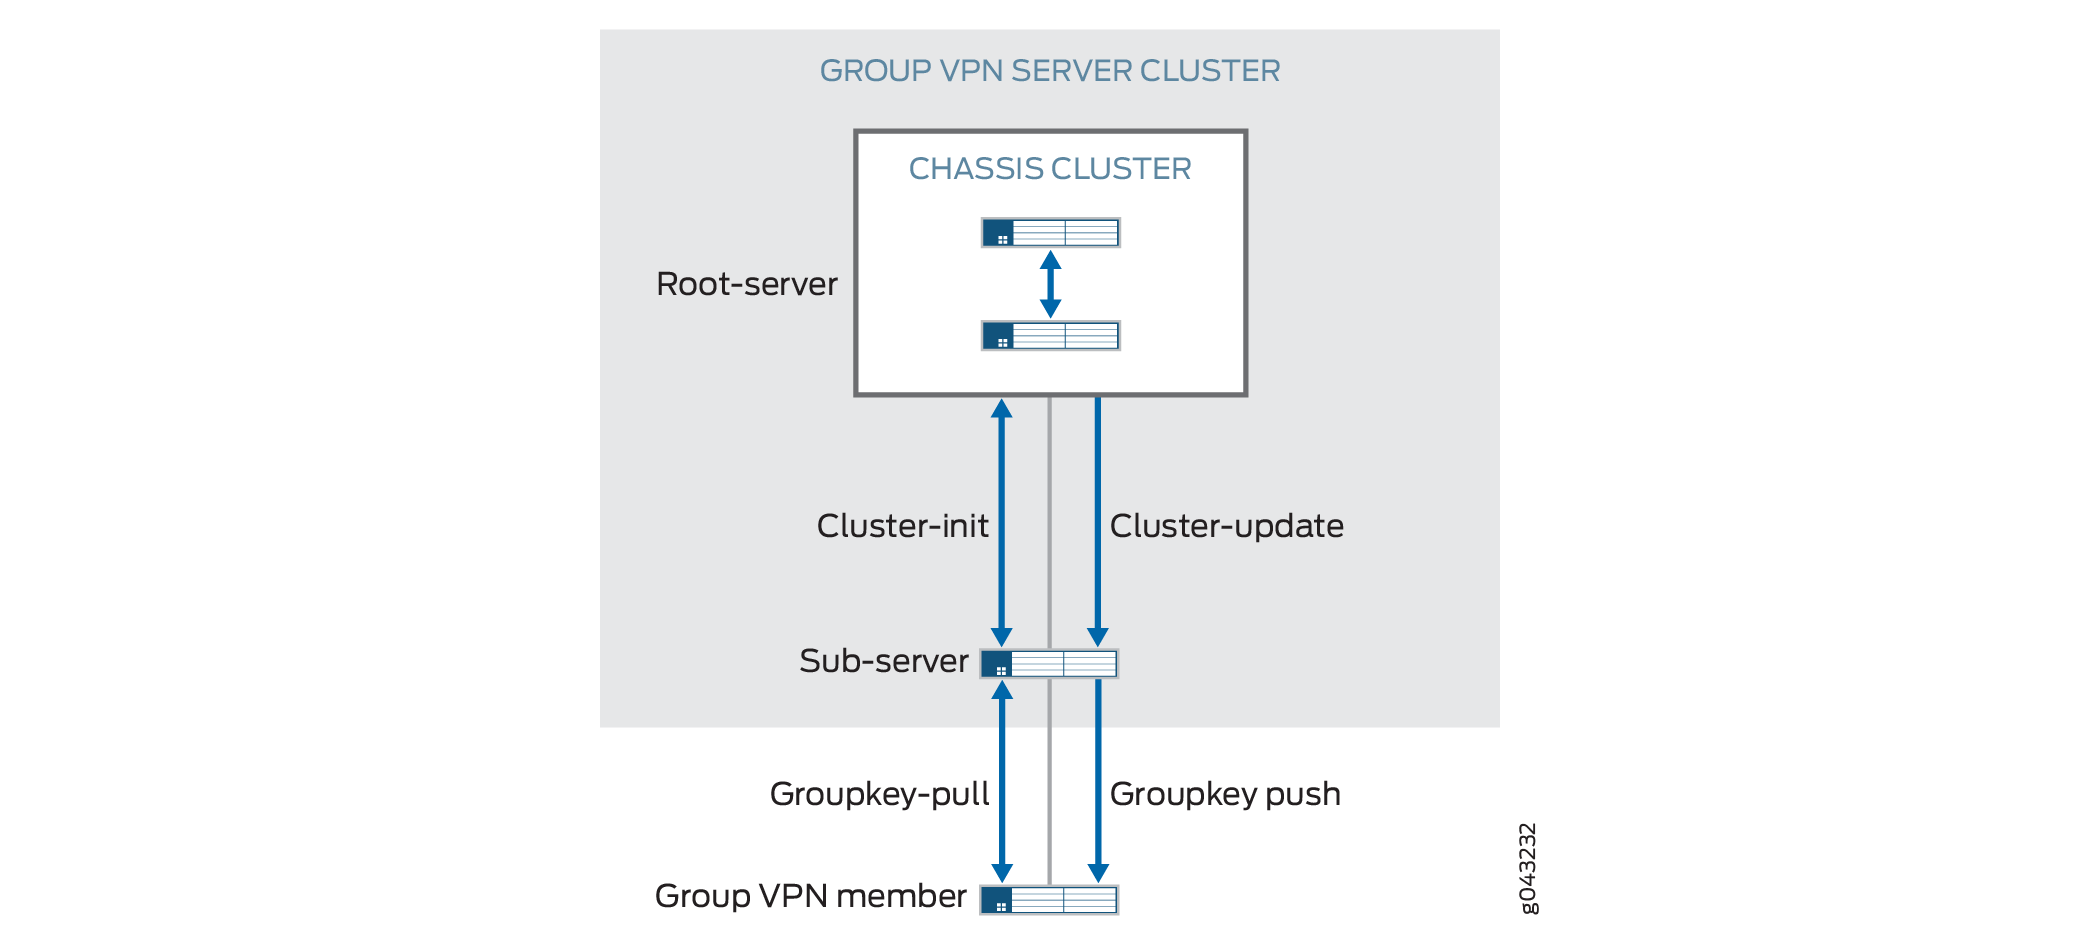 Group VPNv2 Server Cluster Messages